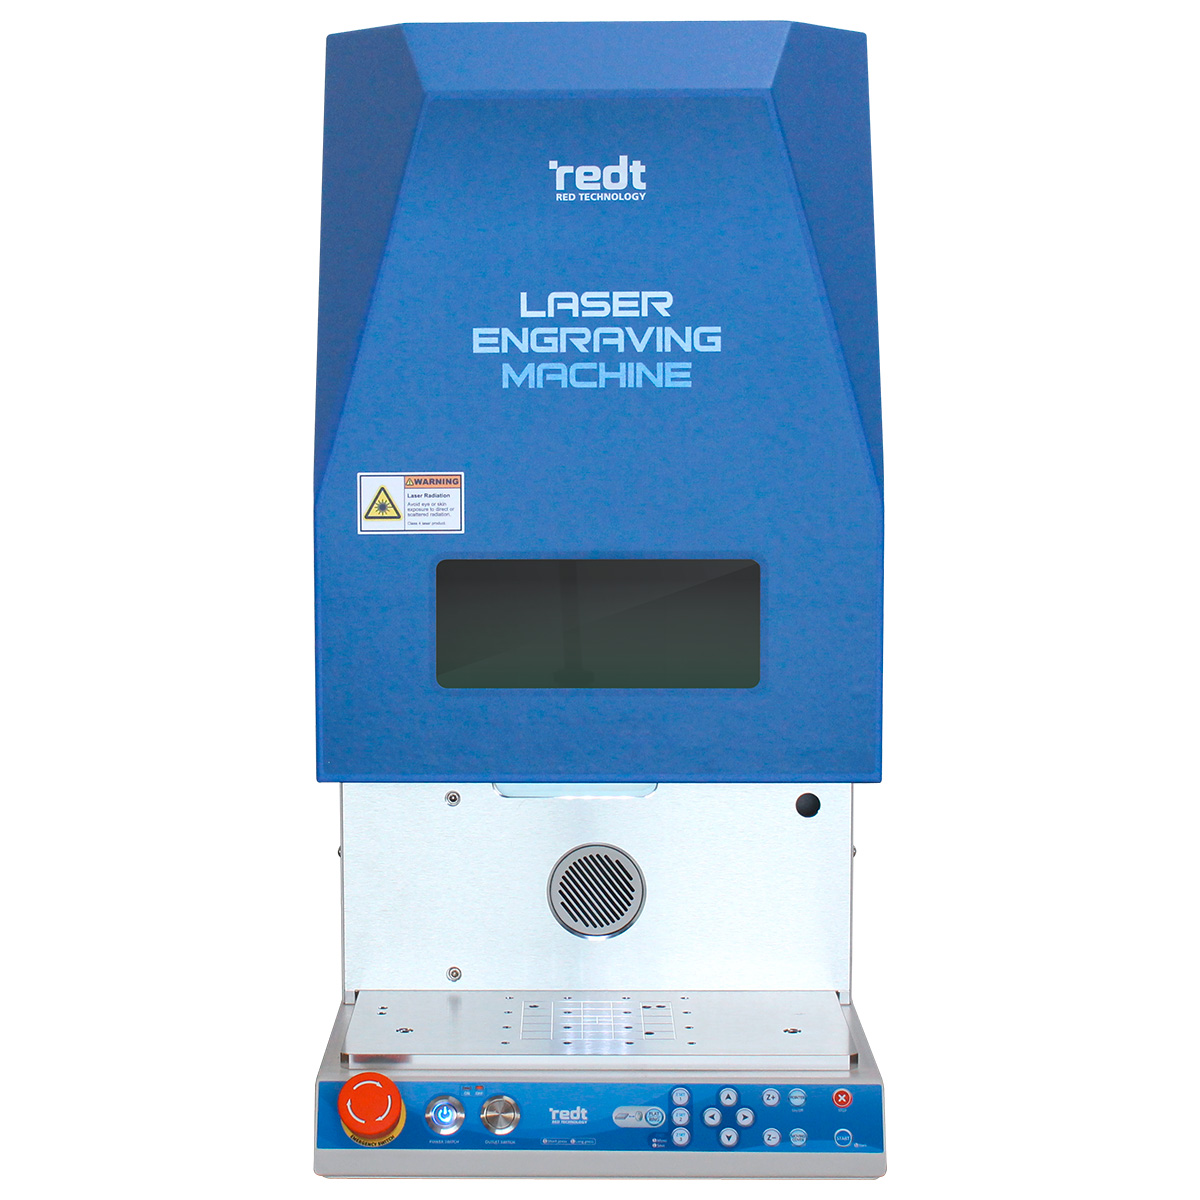 Laser engraving machine IMP-L200, 60 watts